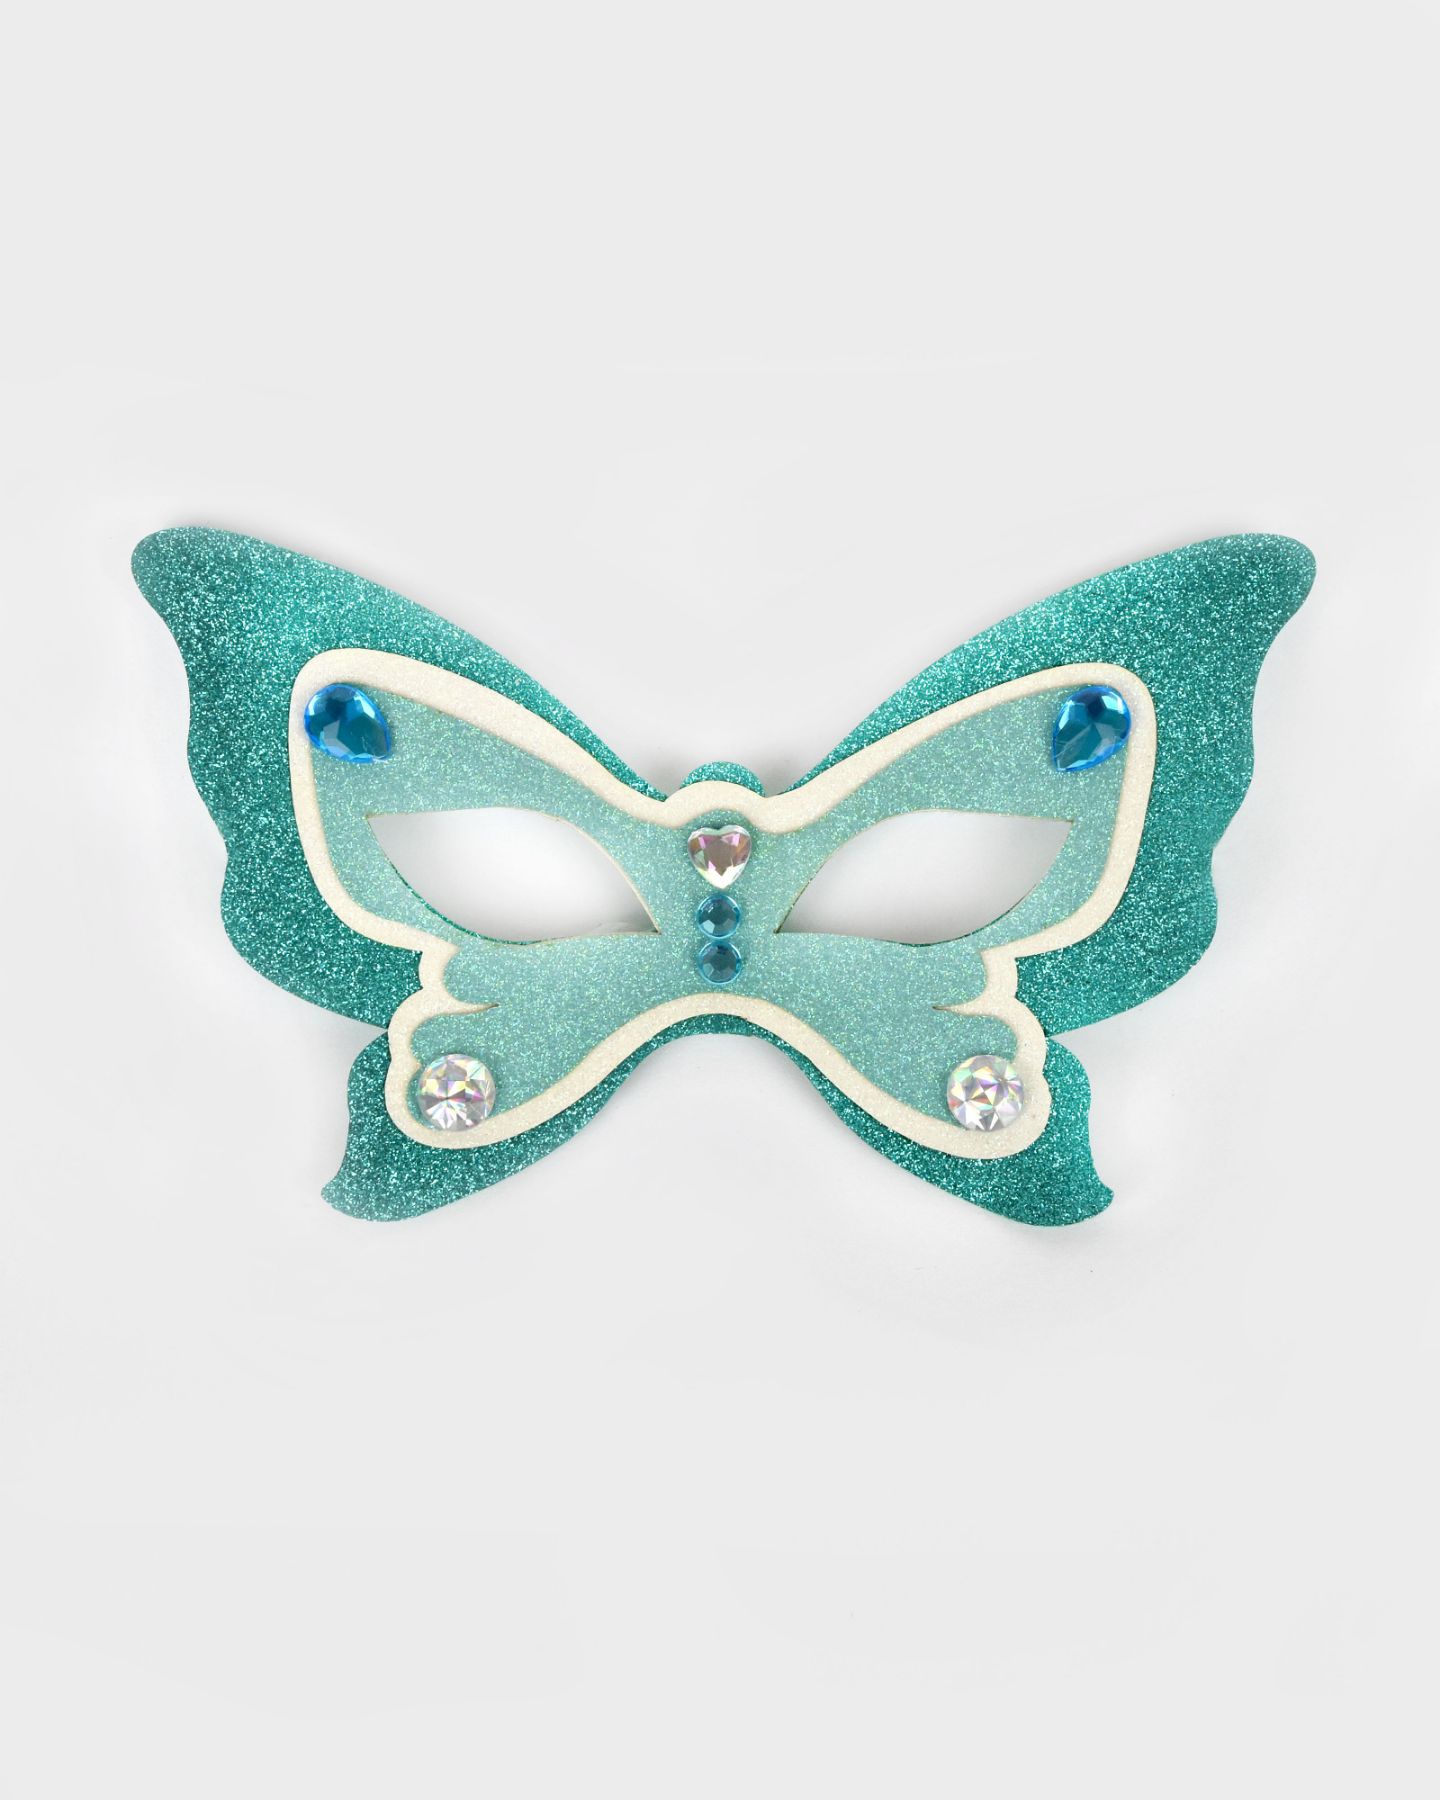 Turkos glittrig fjärilsmask med vita och ljusblå detaljer. Masken är också prydd med klara och blå plexistenar.